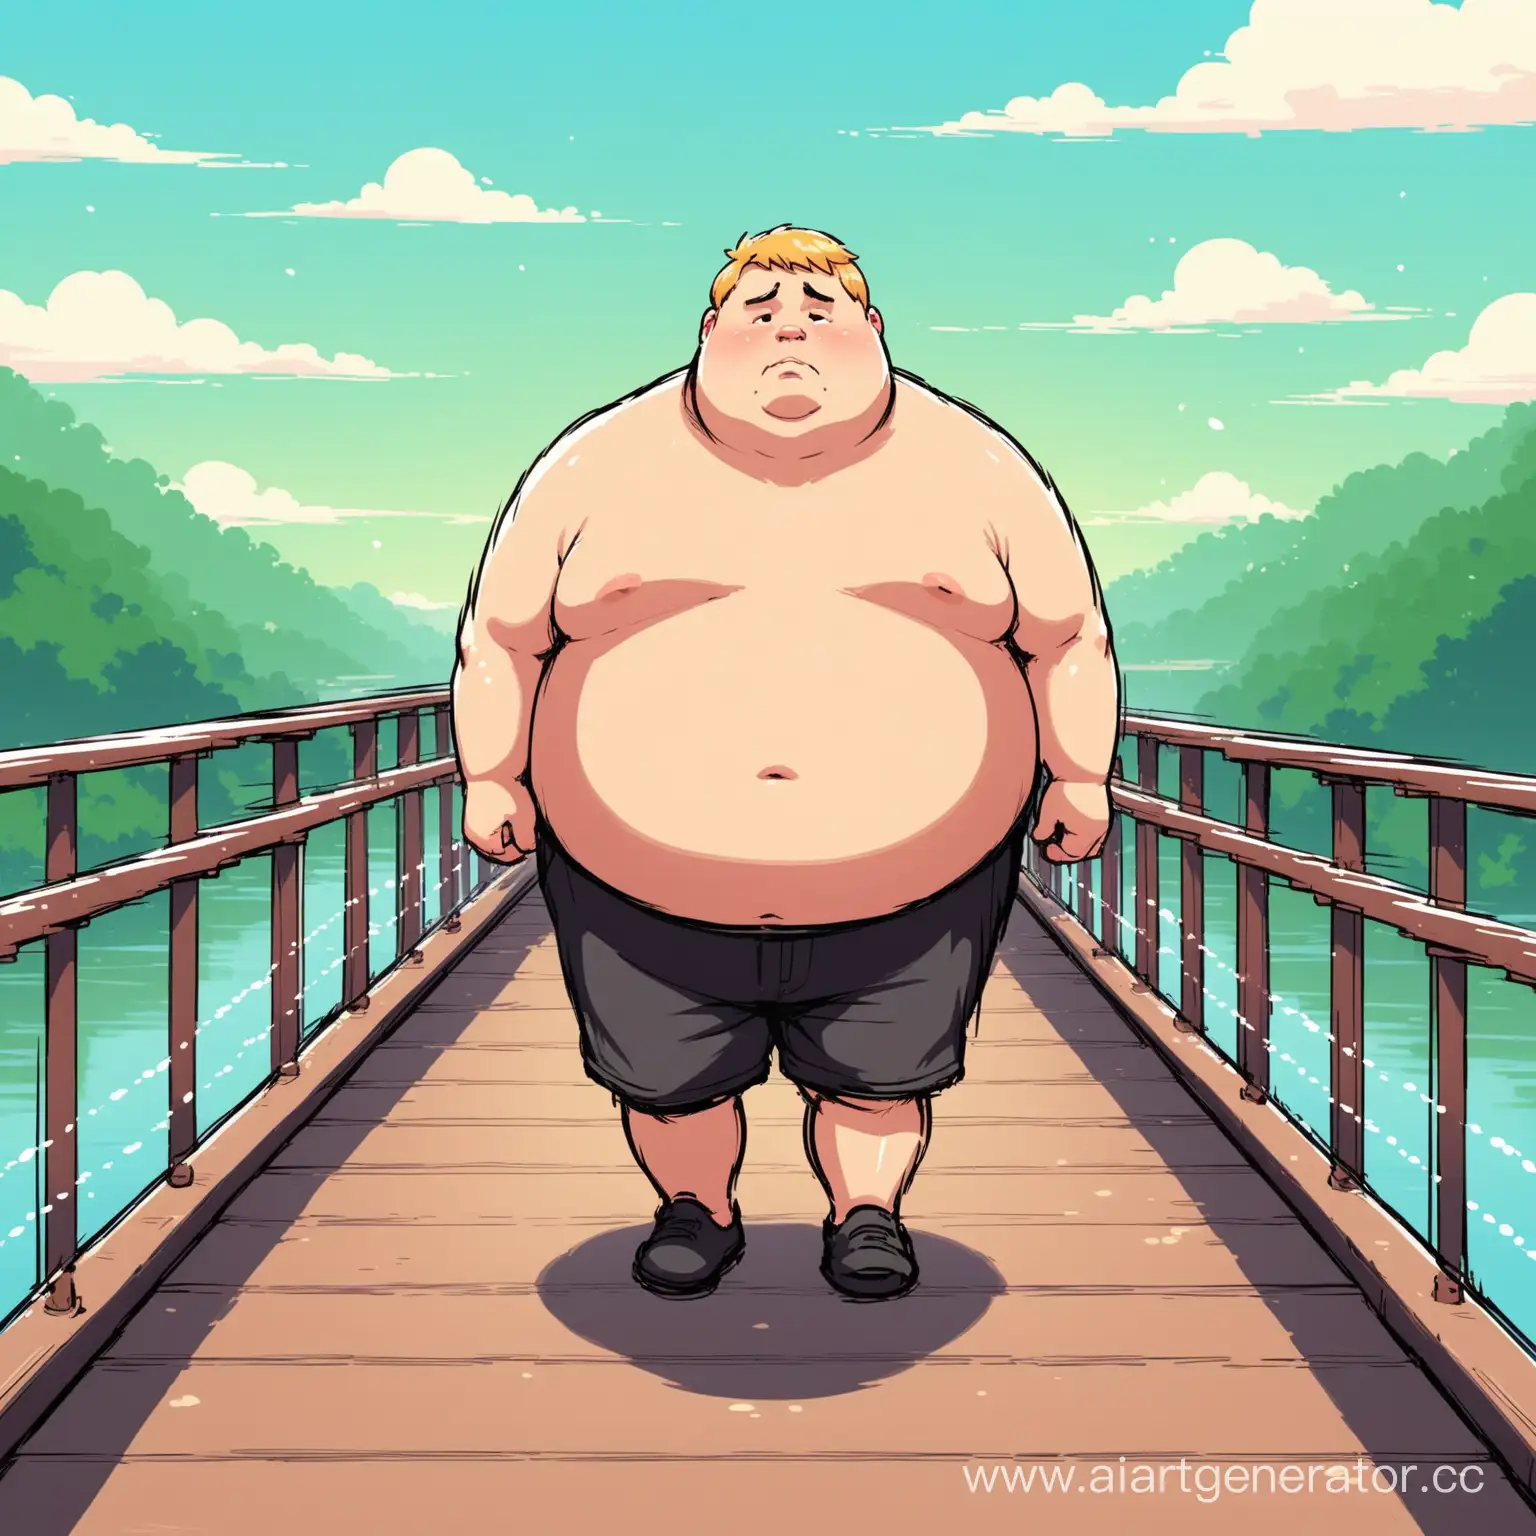 Беловолосый толстый парень гуляет по мосту в одиночестве и грустит.